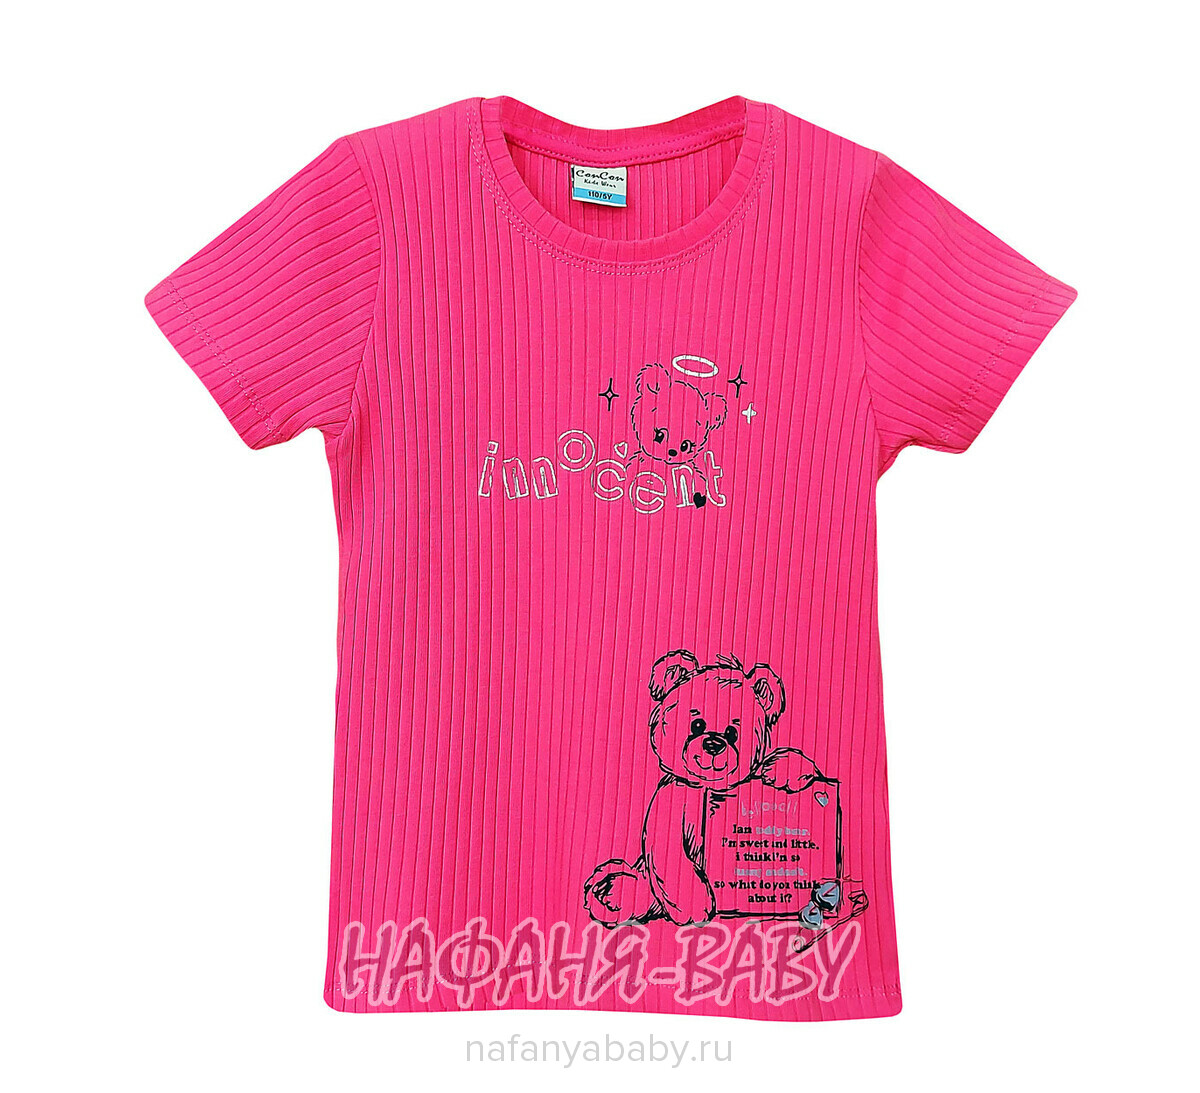 Детская футболка Con Con арт. 16371 для девочки 2-6 лет, цвет розовый, оптом Турция